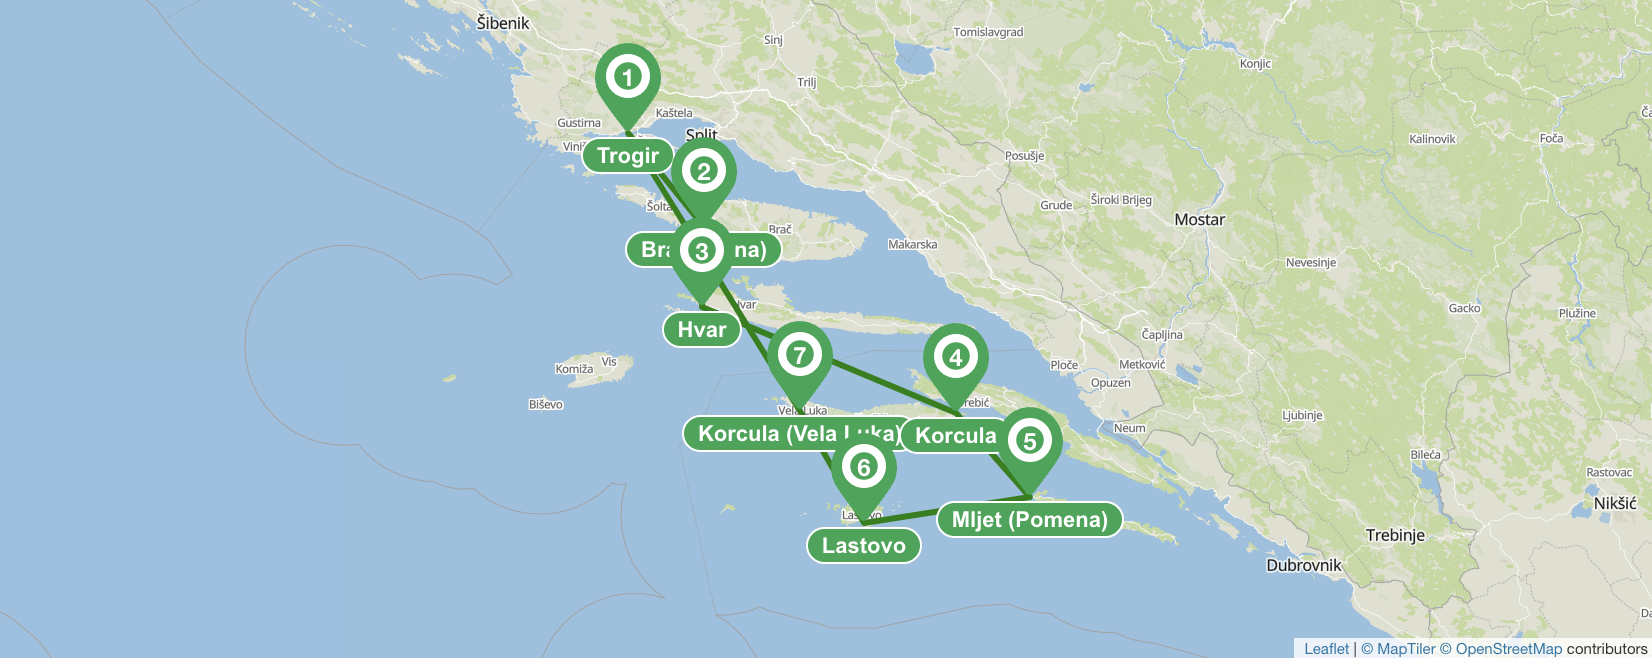 Trogir (Sur) 7 días itinerario de navegación